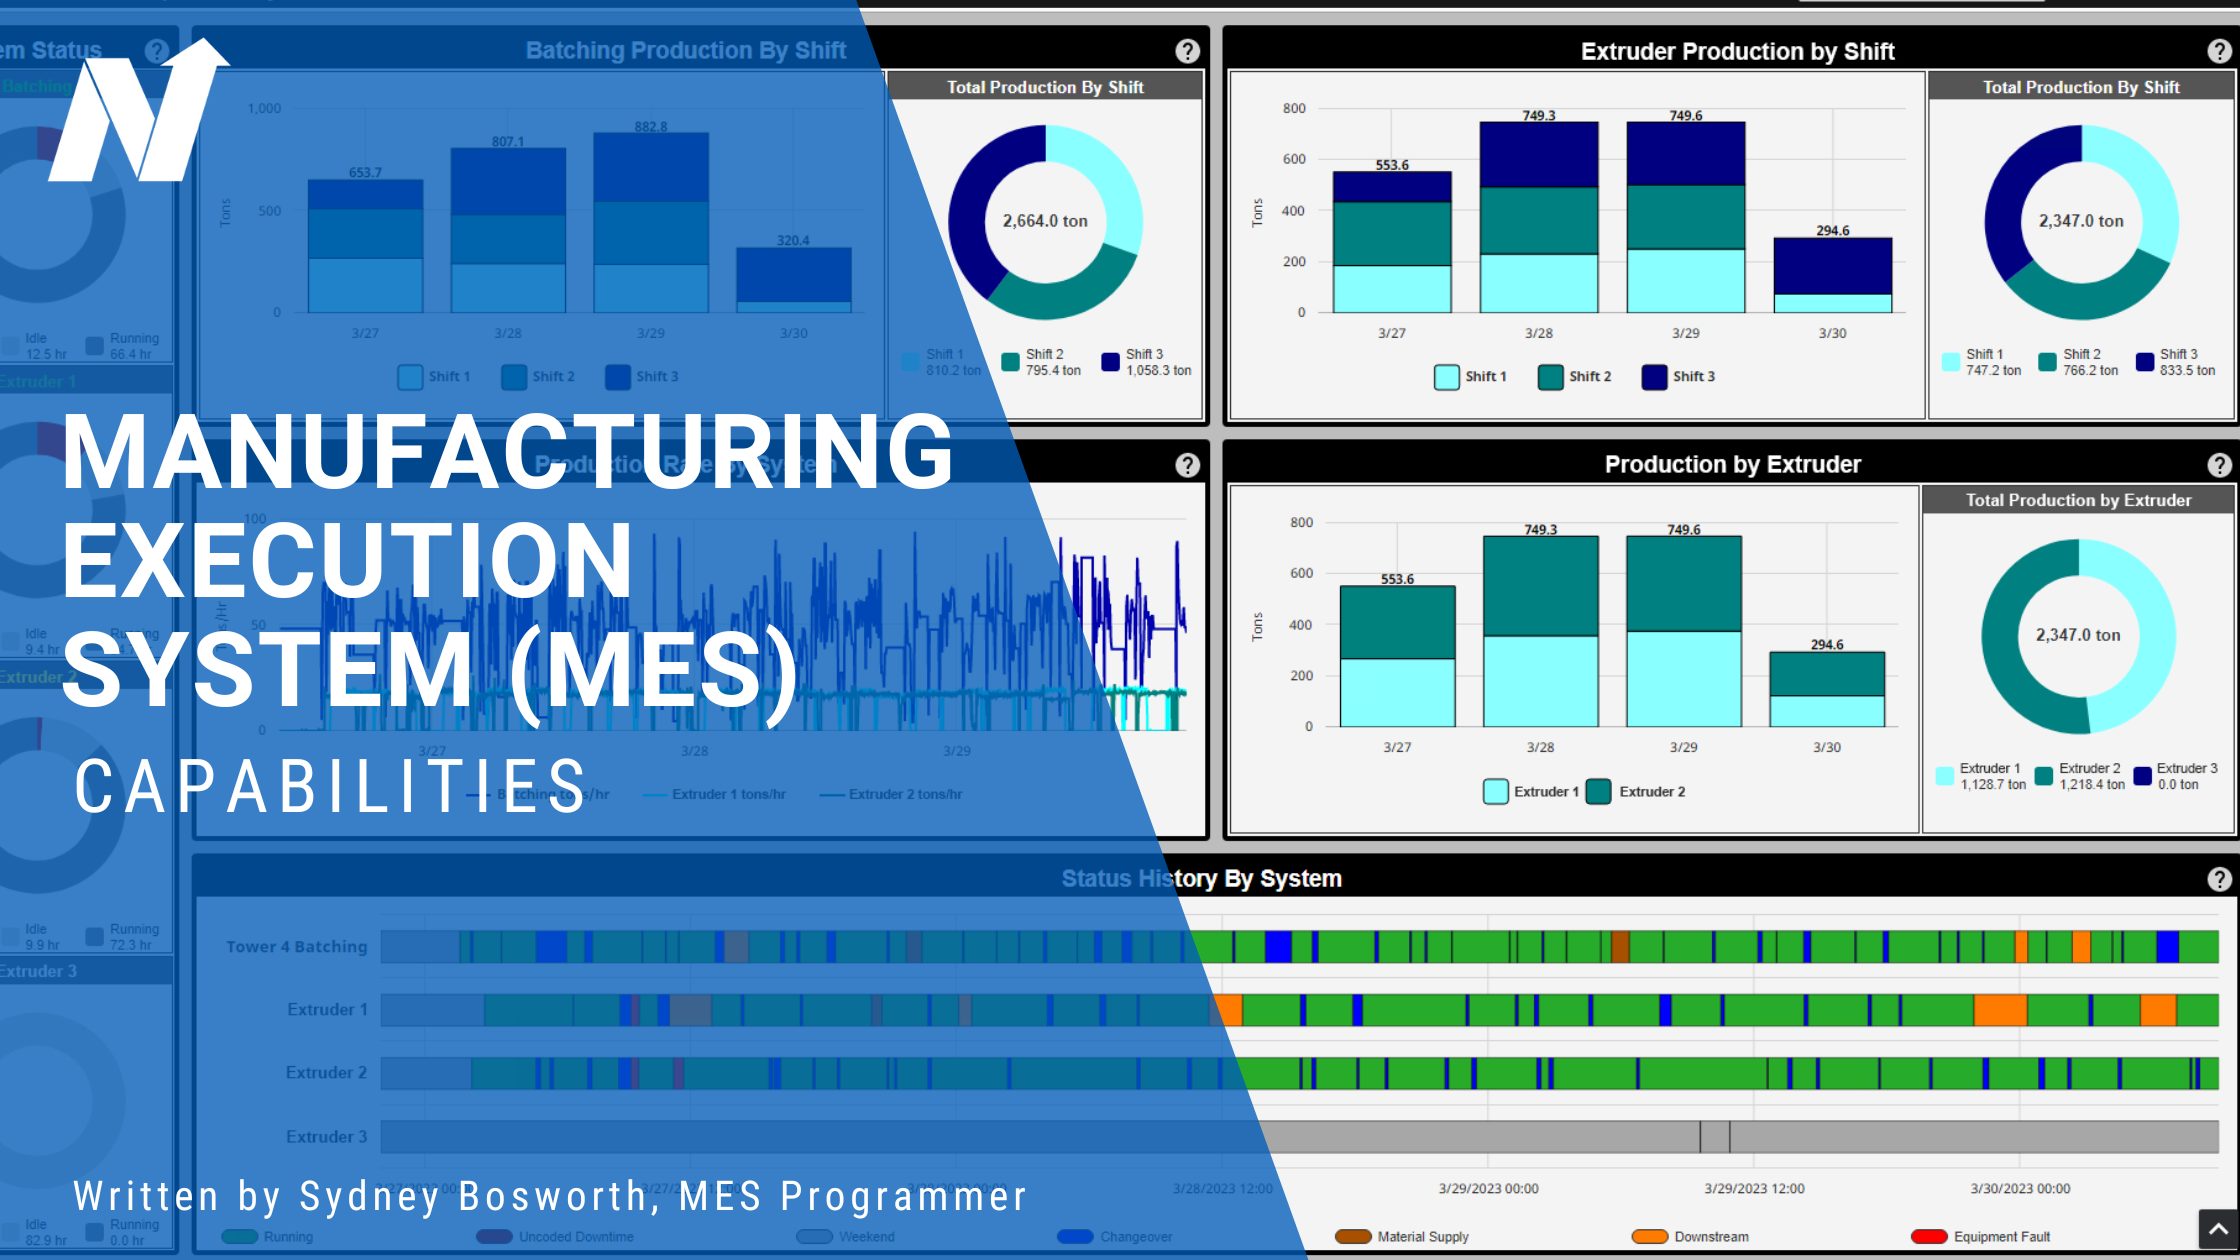 Captura de pantalla del cuadro de mandos MES con superposición azul transparente que indica el título del artículo Capacidades del Sistema de Ejecución de Fabricación (MES) por Sydney Bosworth, Programador MES